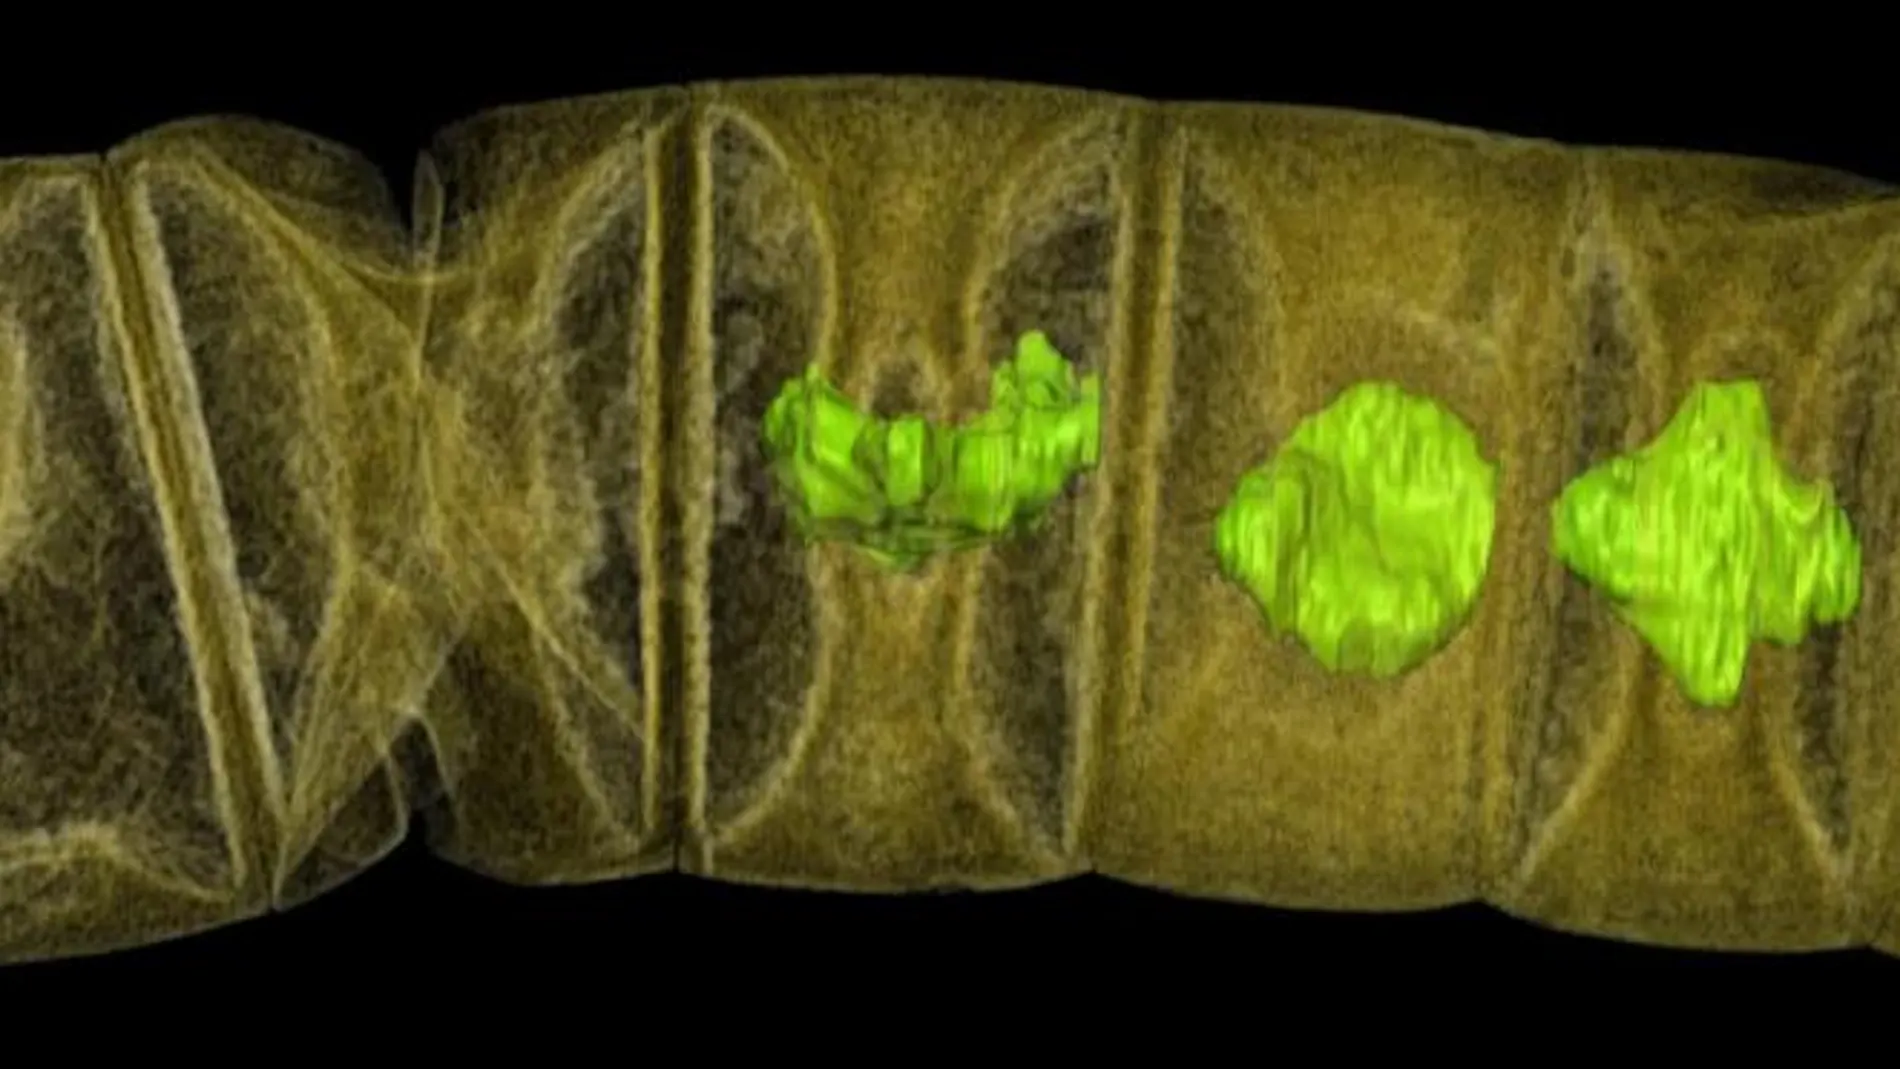 Imagen tomográfica por rayos X de algas rojas fósiles estudiadas